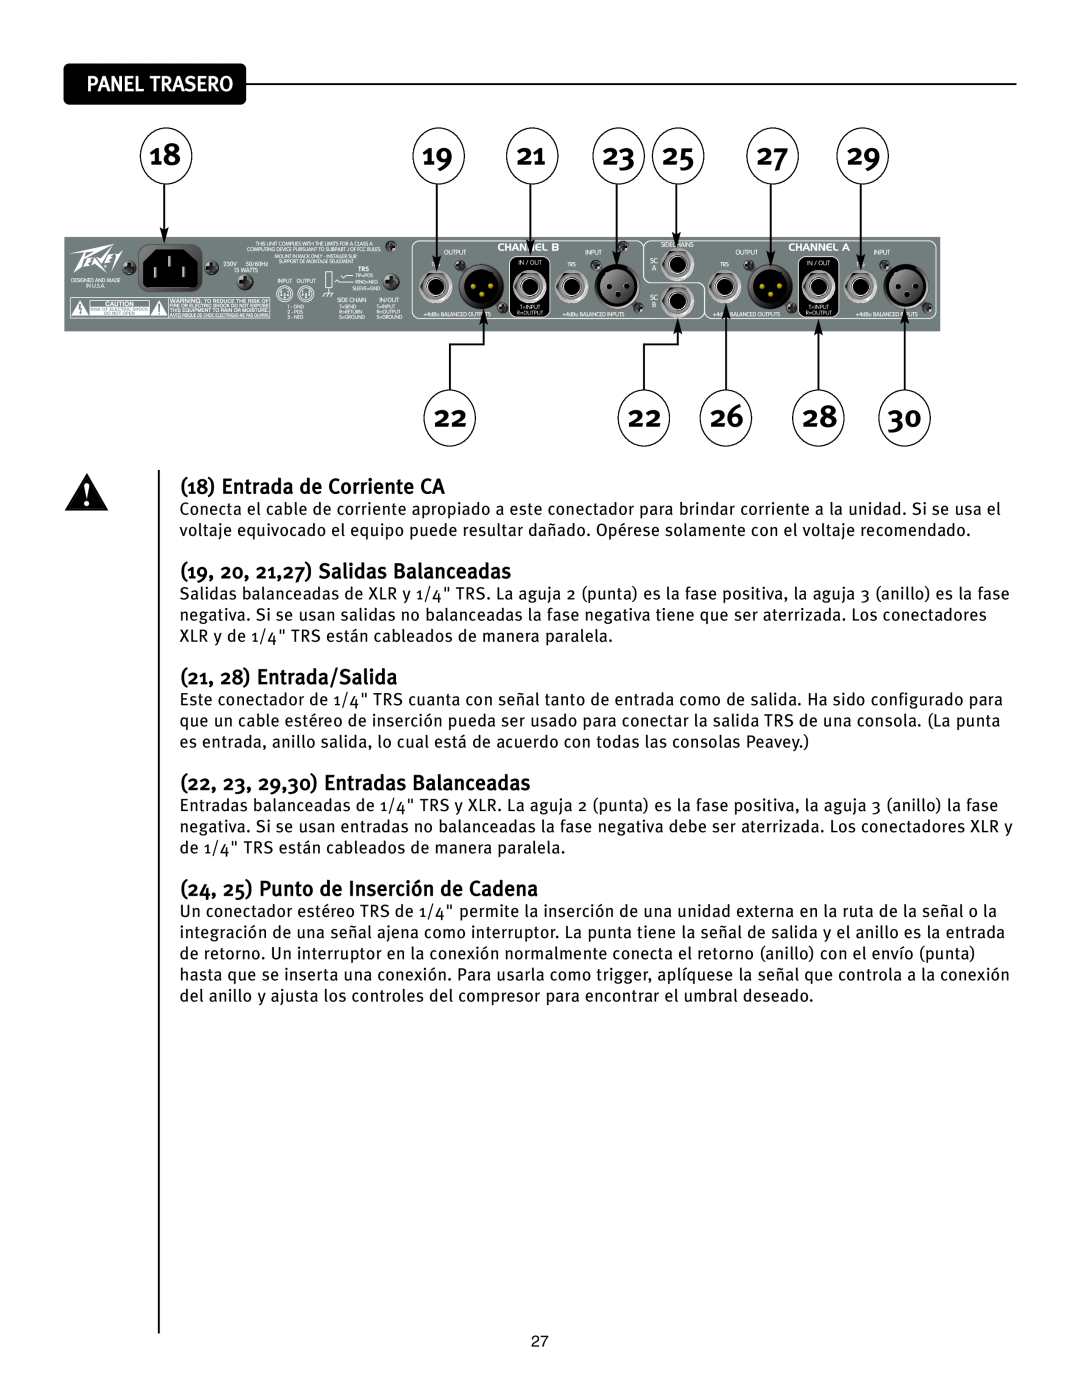 Peavey CEL-2A manual Panel Trasero, Entrada de Corriente CA, 19, 20, 21,27 Salidas Balanceadas, 21, 28 Entrada/Salida 